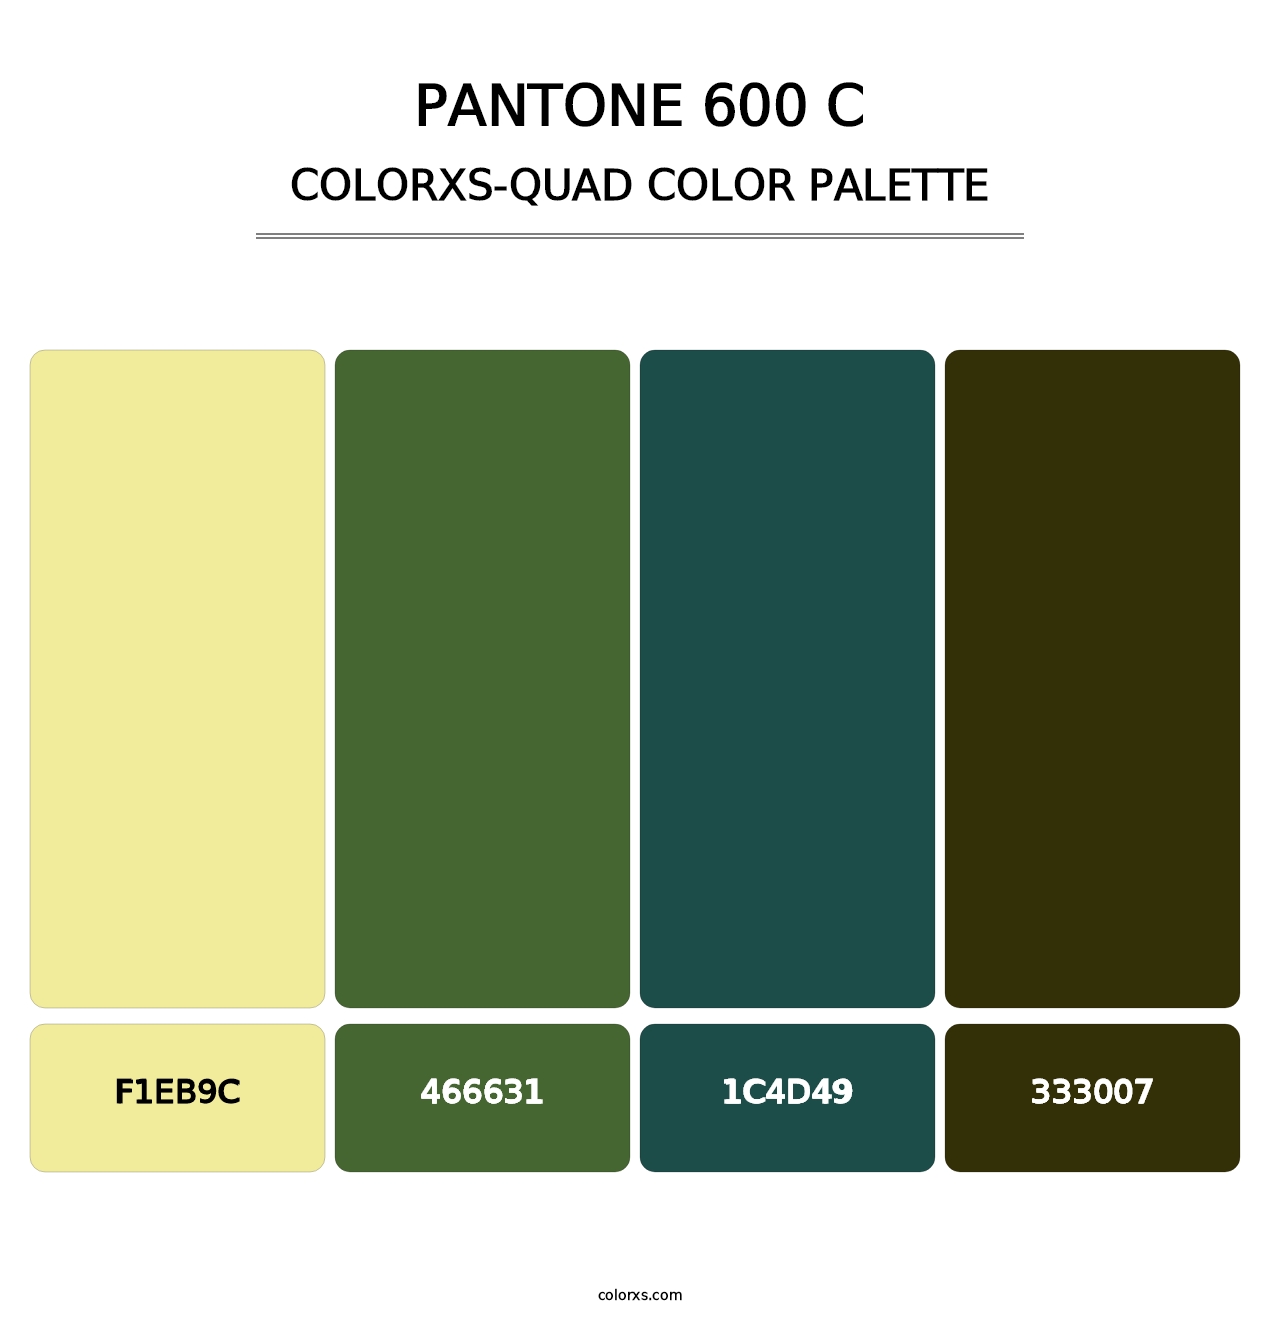 PANTONE 600 C - Colorxs Quad Palette